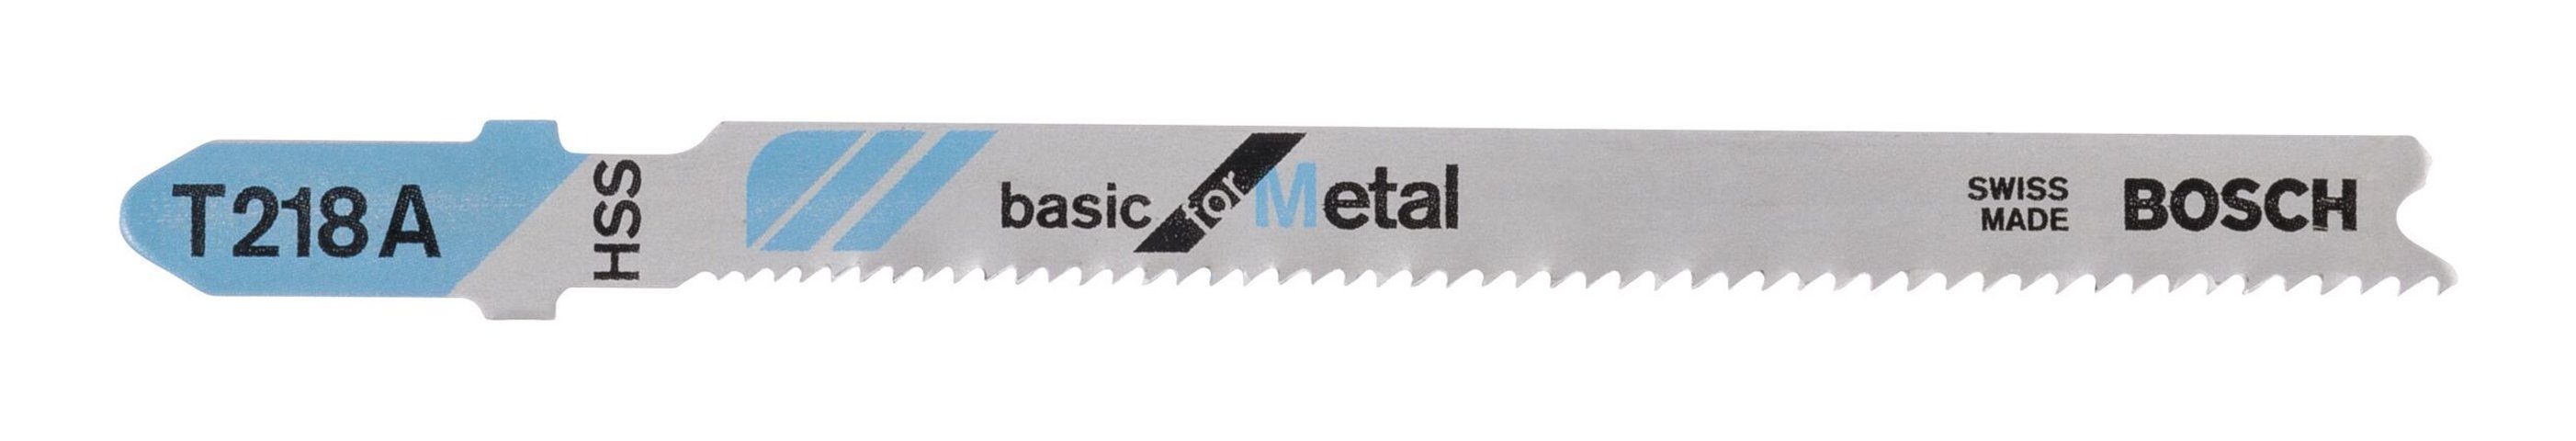 BOSCH Stichsägeblatt A - Metal 218 Basic for T 3er-Pack (3 Stück)